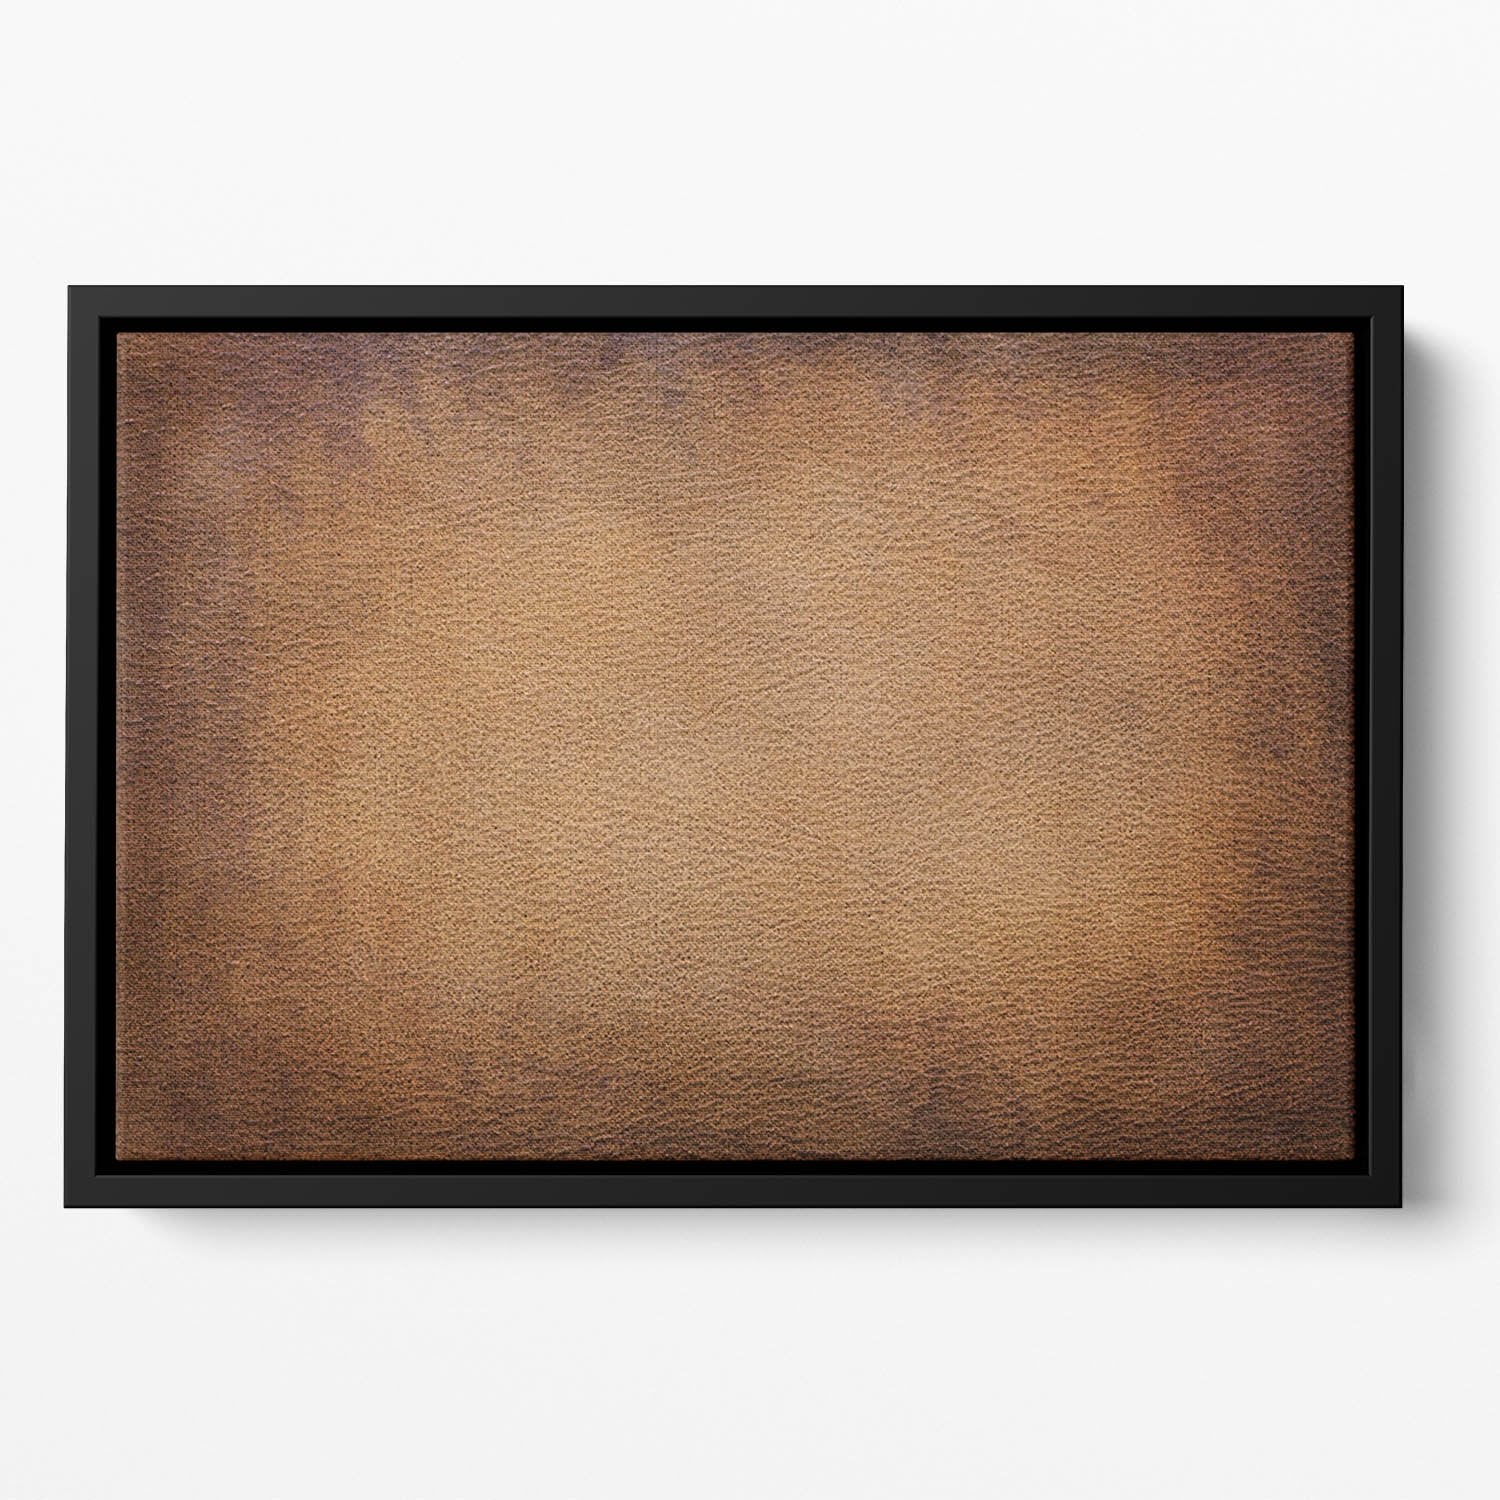 Old vintage brown leather Floating Framed Canvas